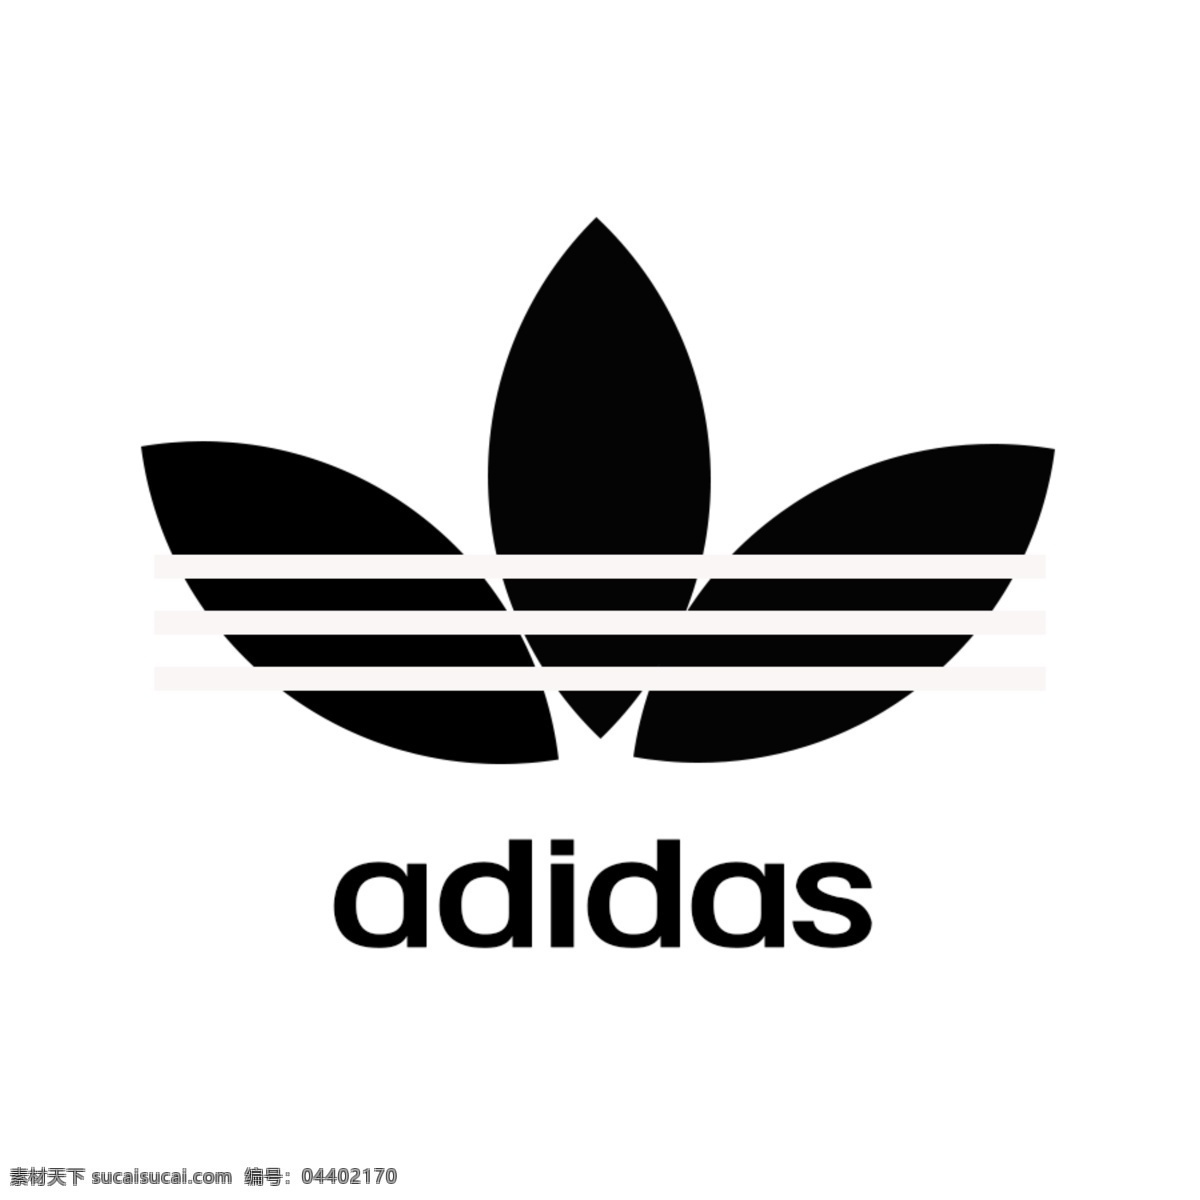 adidas 图标 logo 运动 黑白色图标 运动鞋标志 标志图标 企业 标志